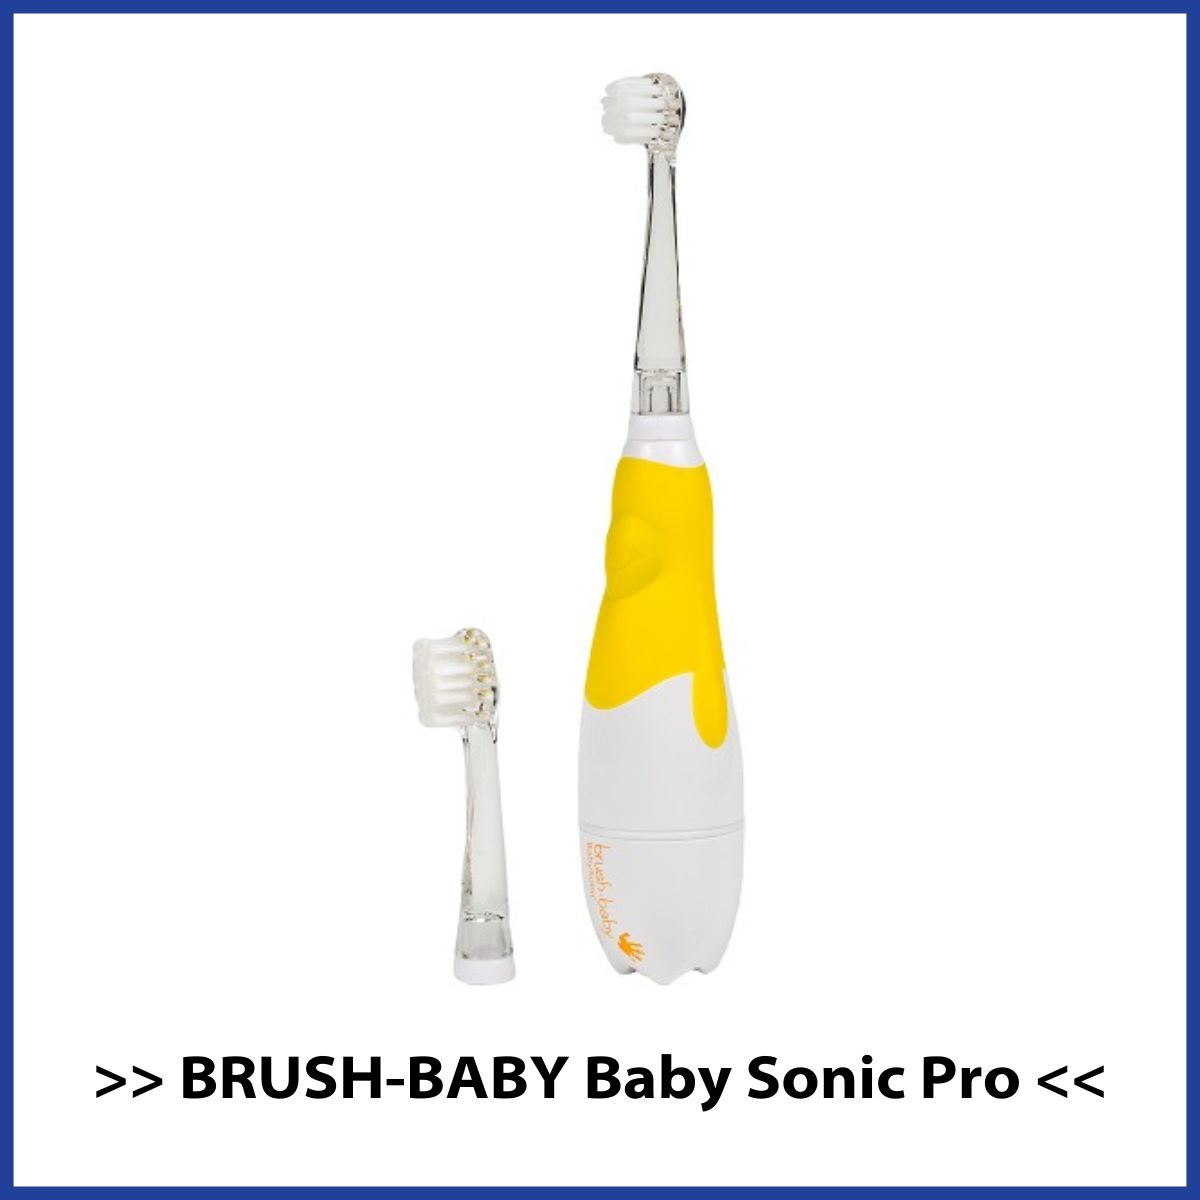 Ranking szczoteczek sonicznych dla dzieci Brush Baby Baby Sonic Pro w kolorze żółtym